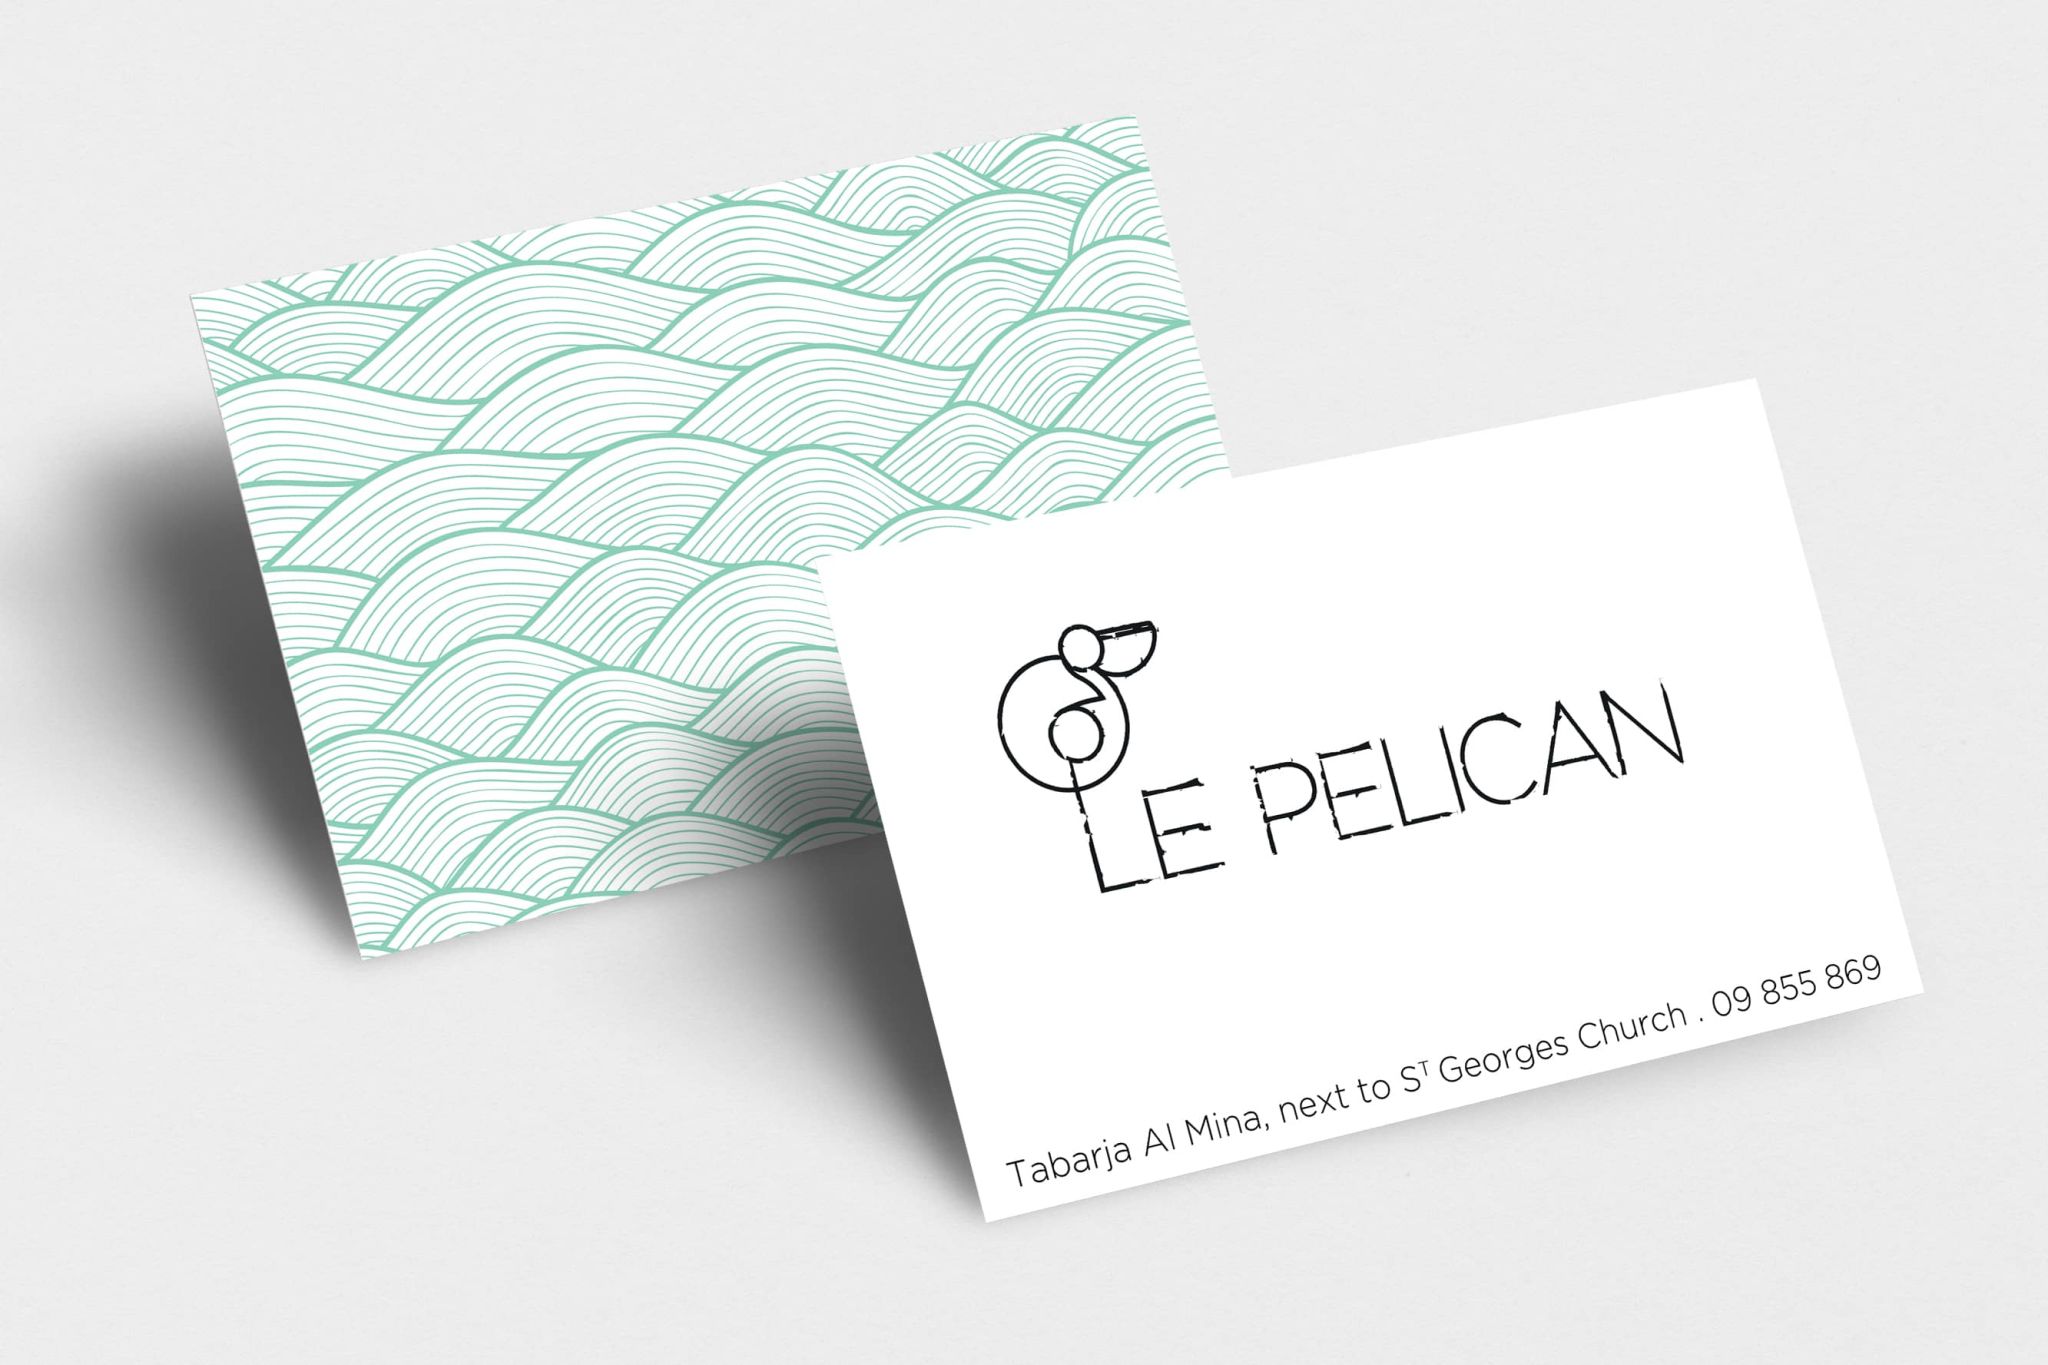 le pelican branding work by misfits digital 3